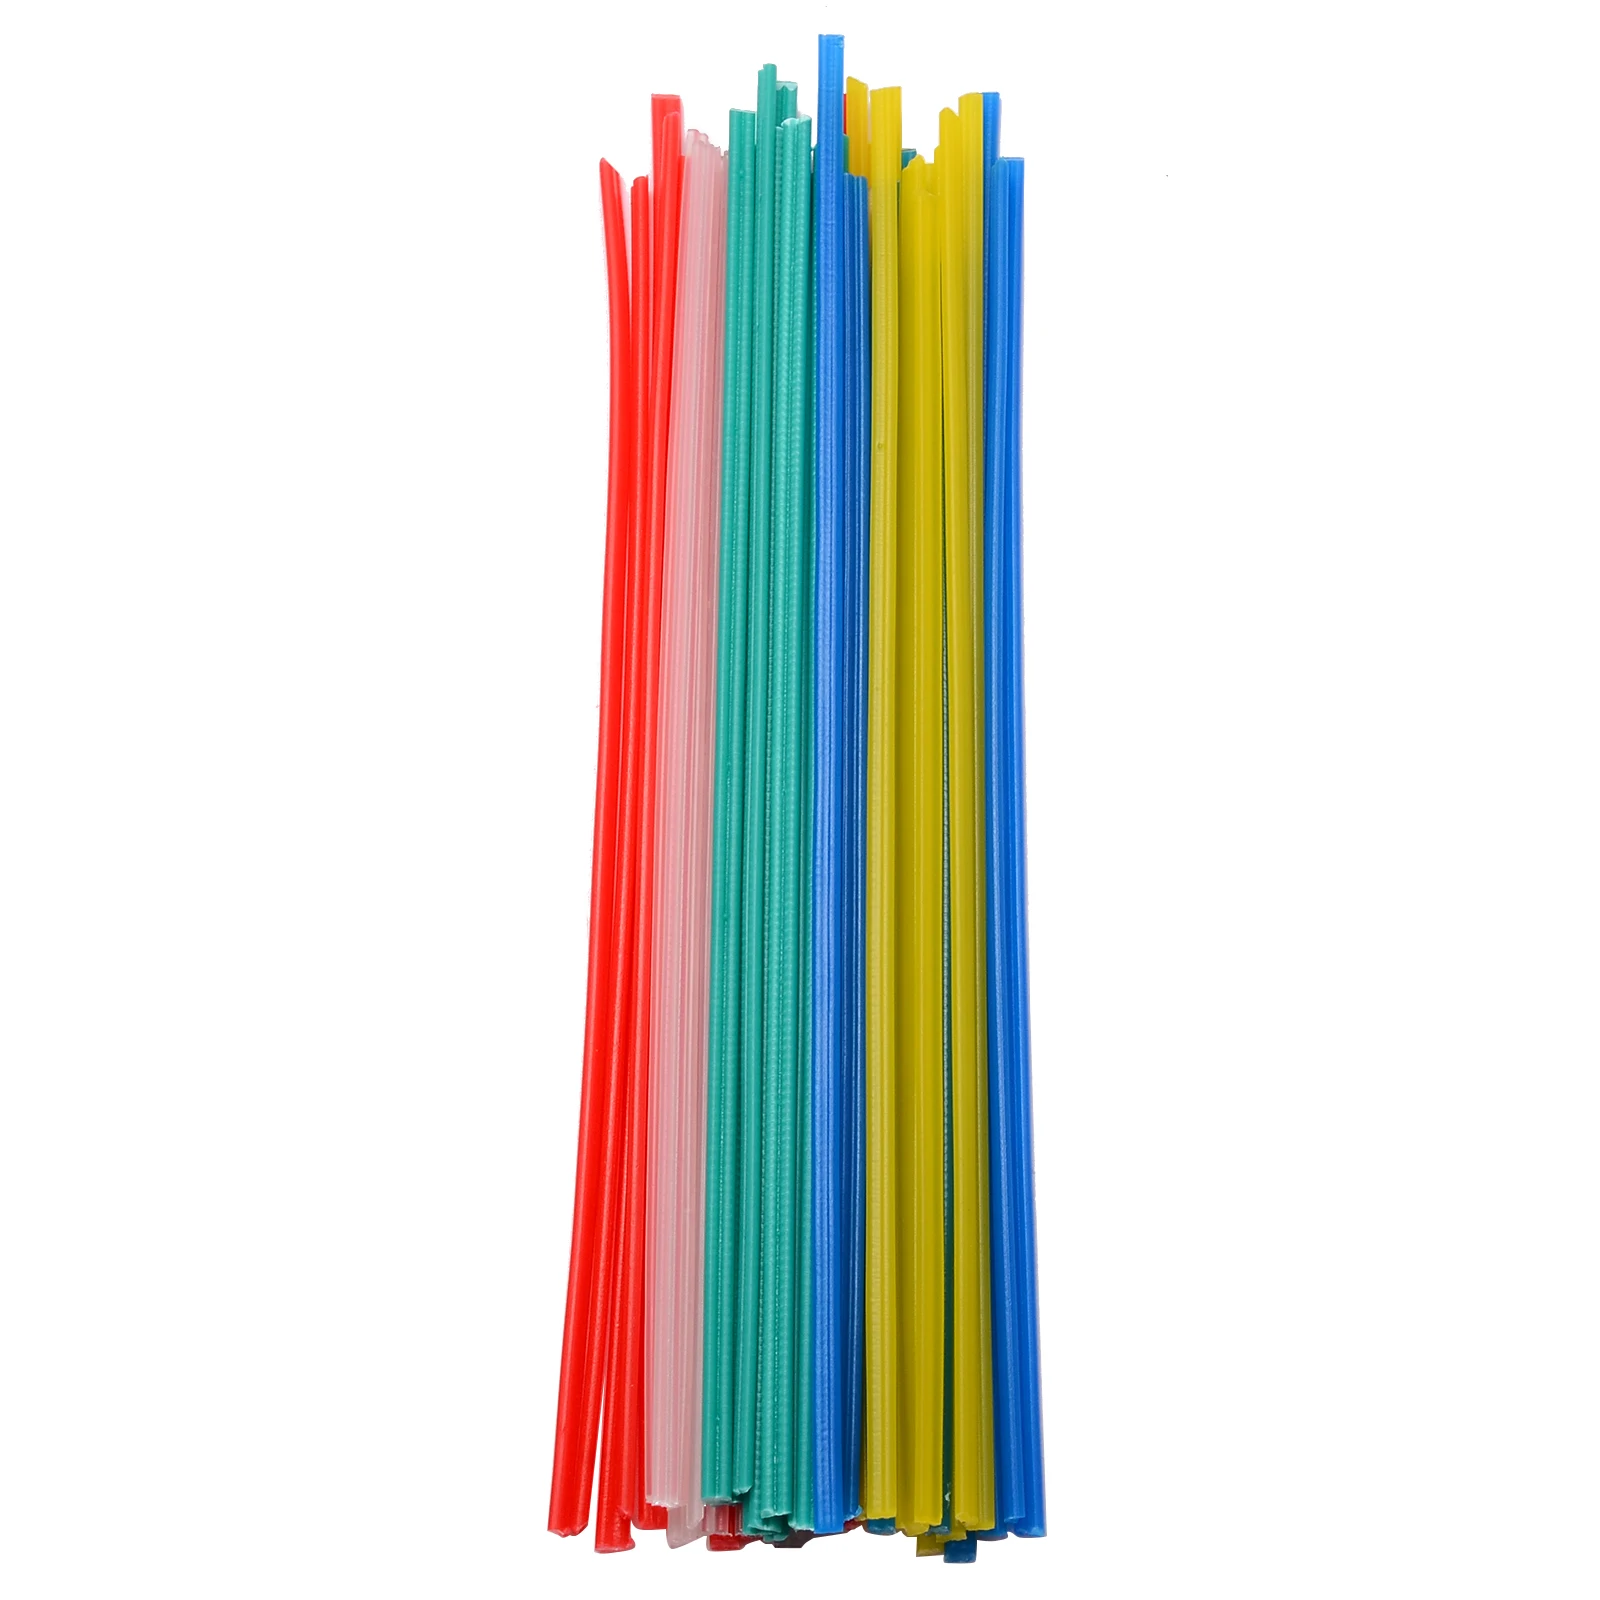 50 шт./компл. 250 мм длина нетоксичные пластиковые сварочные стержни электроды для сварки 5 цветов синий/белый/желтый/красный/зеленый для